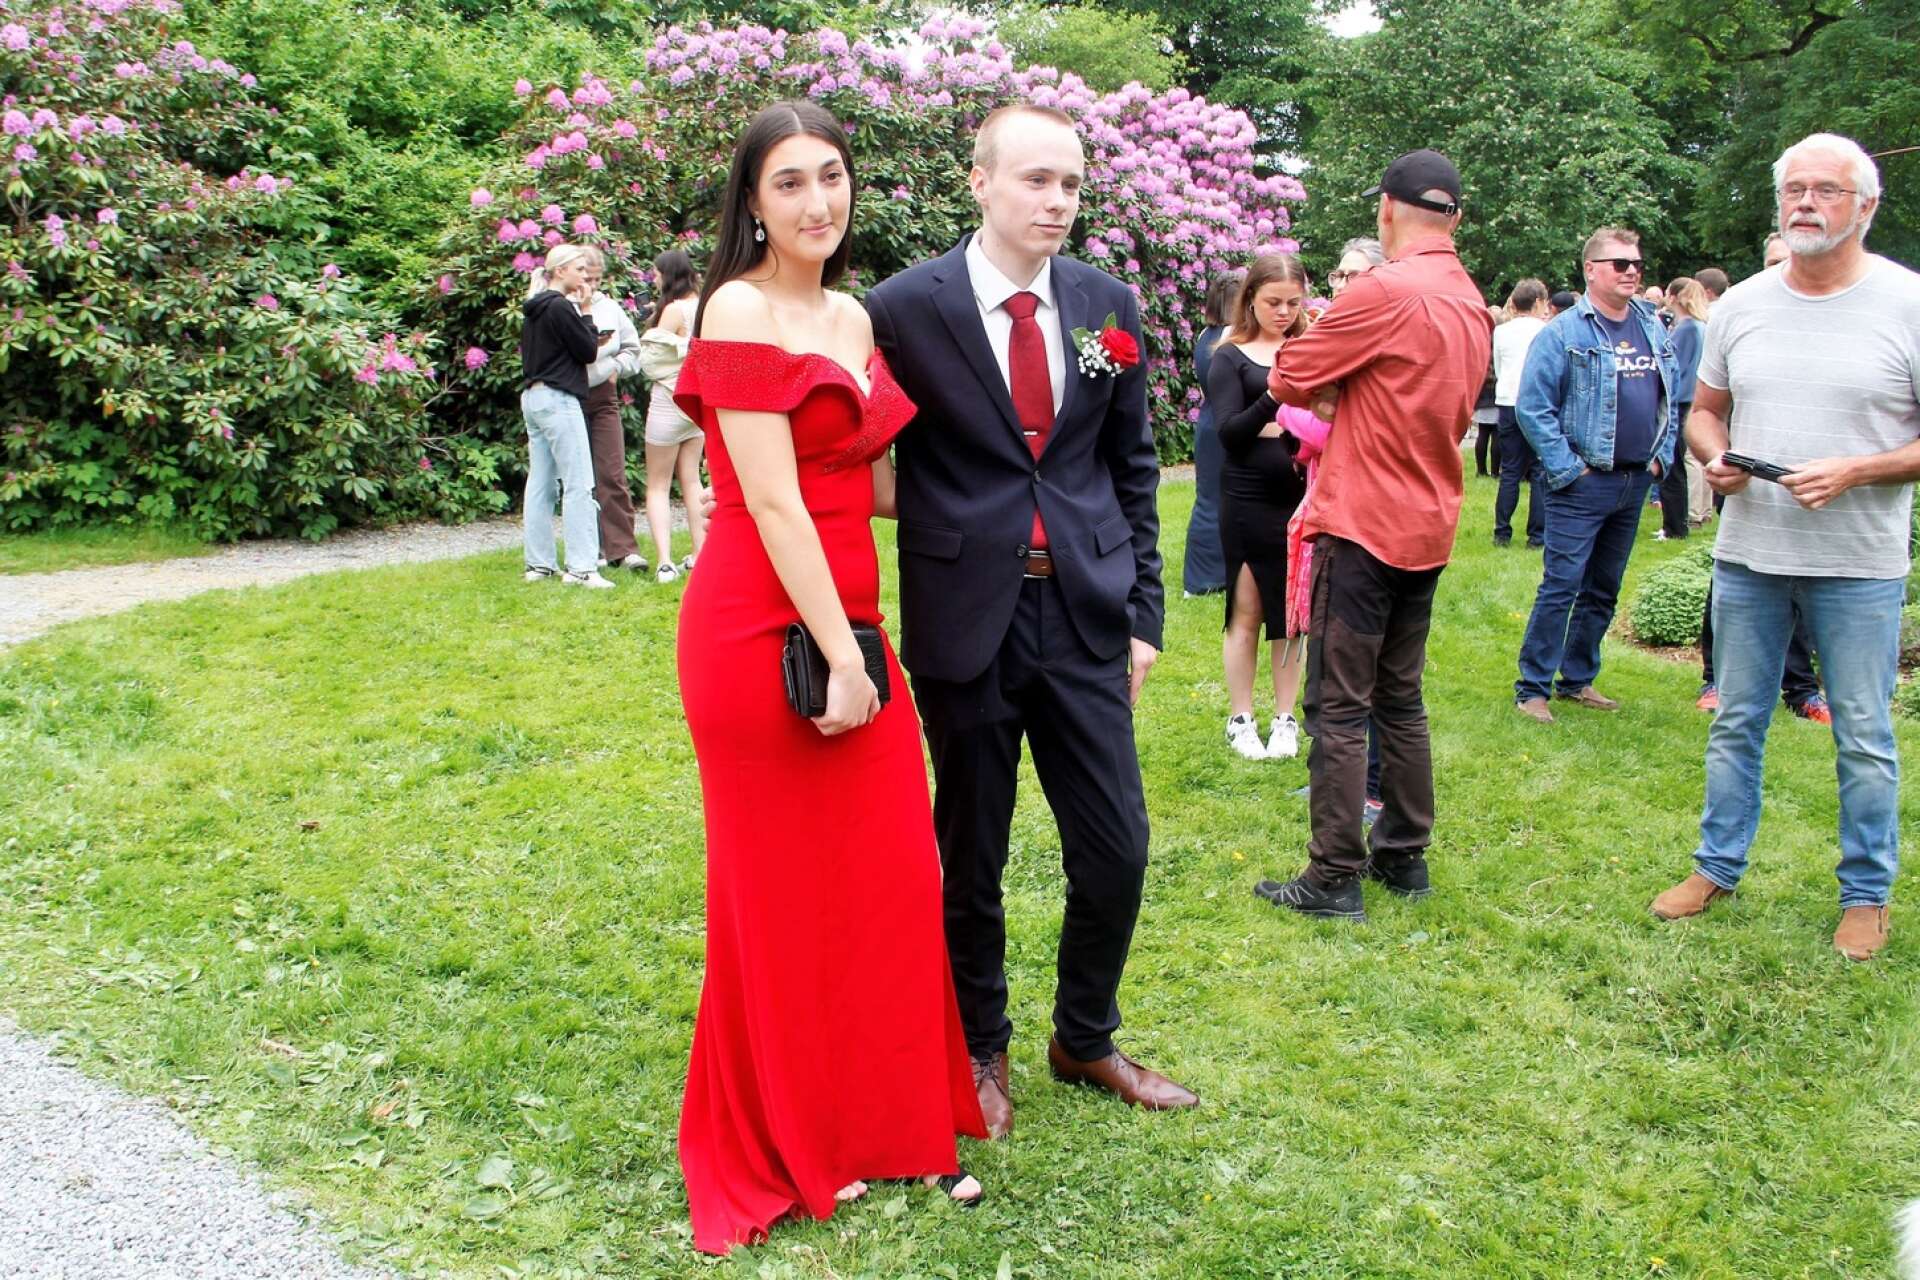 Rafaella Al Homsi i röd långklänning i sällskap med Karl Bergvall med matchande röd ros på kavajslaget.